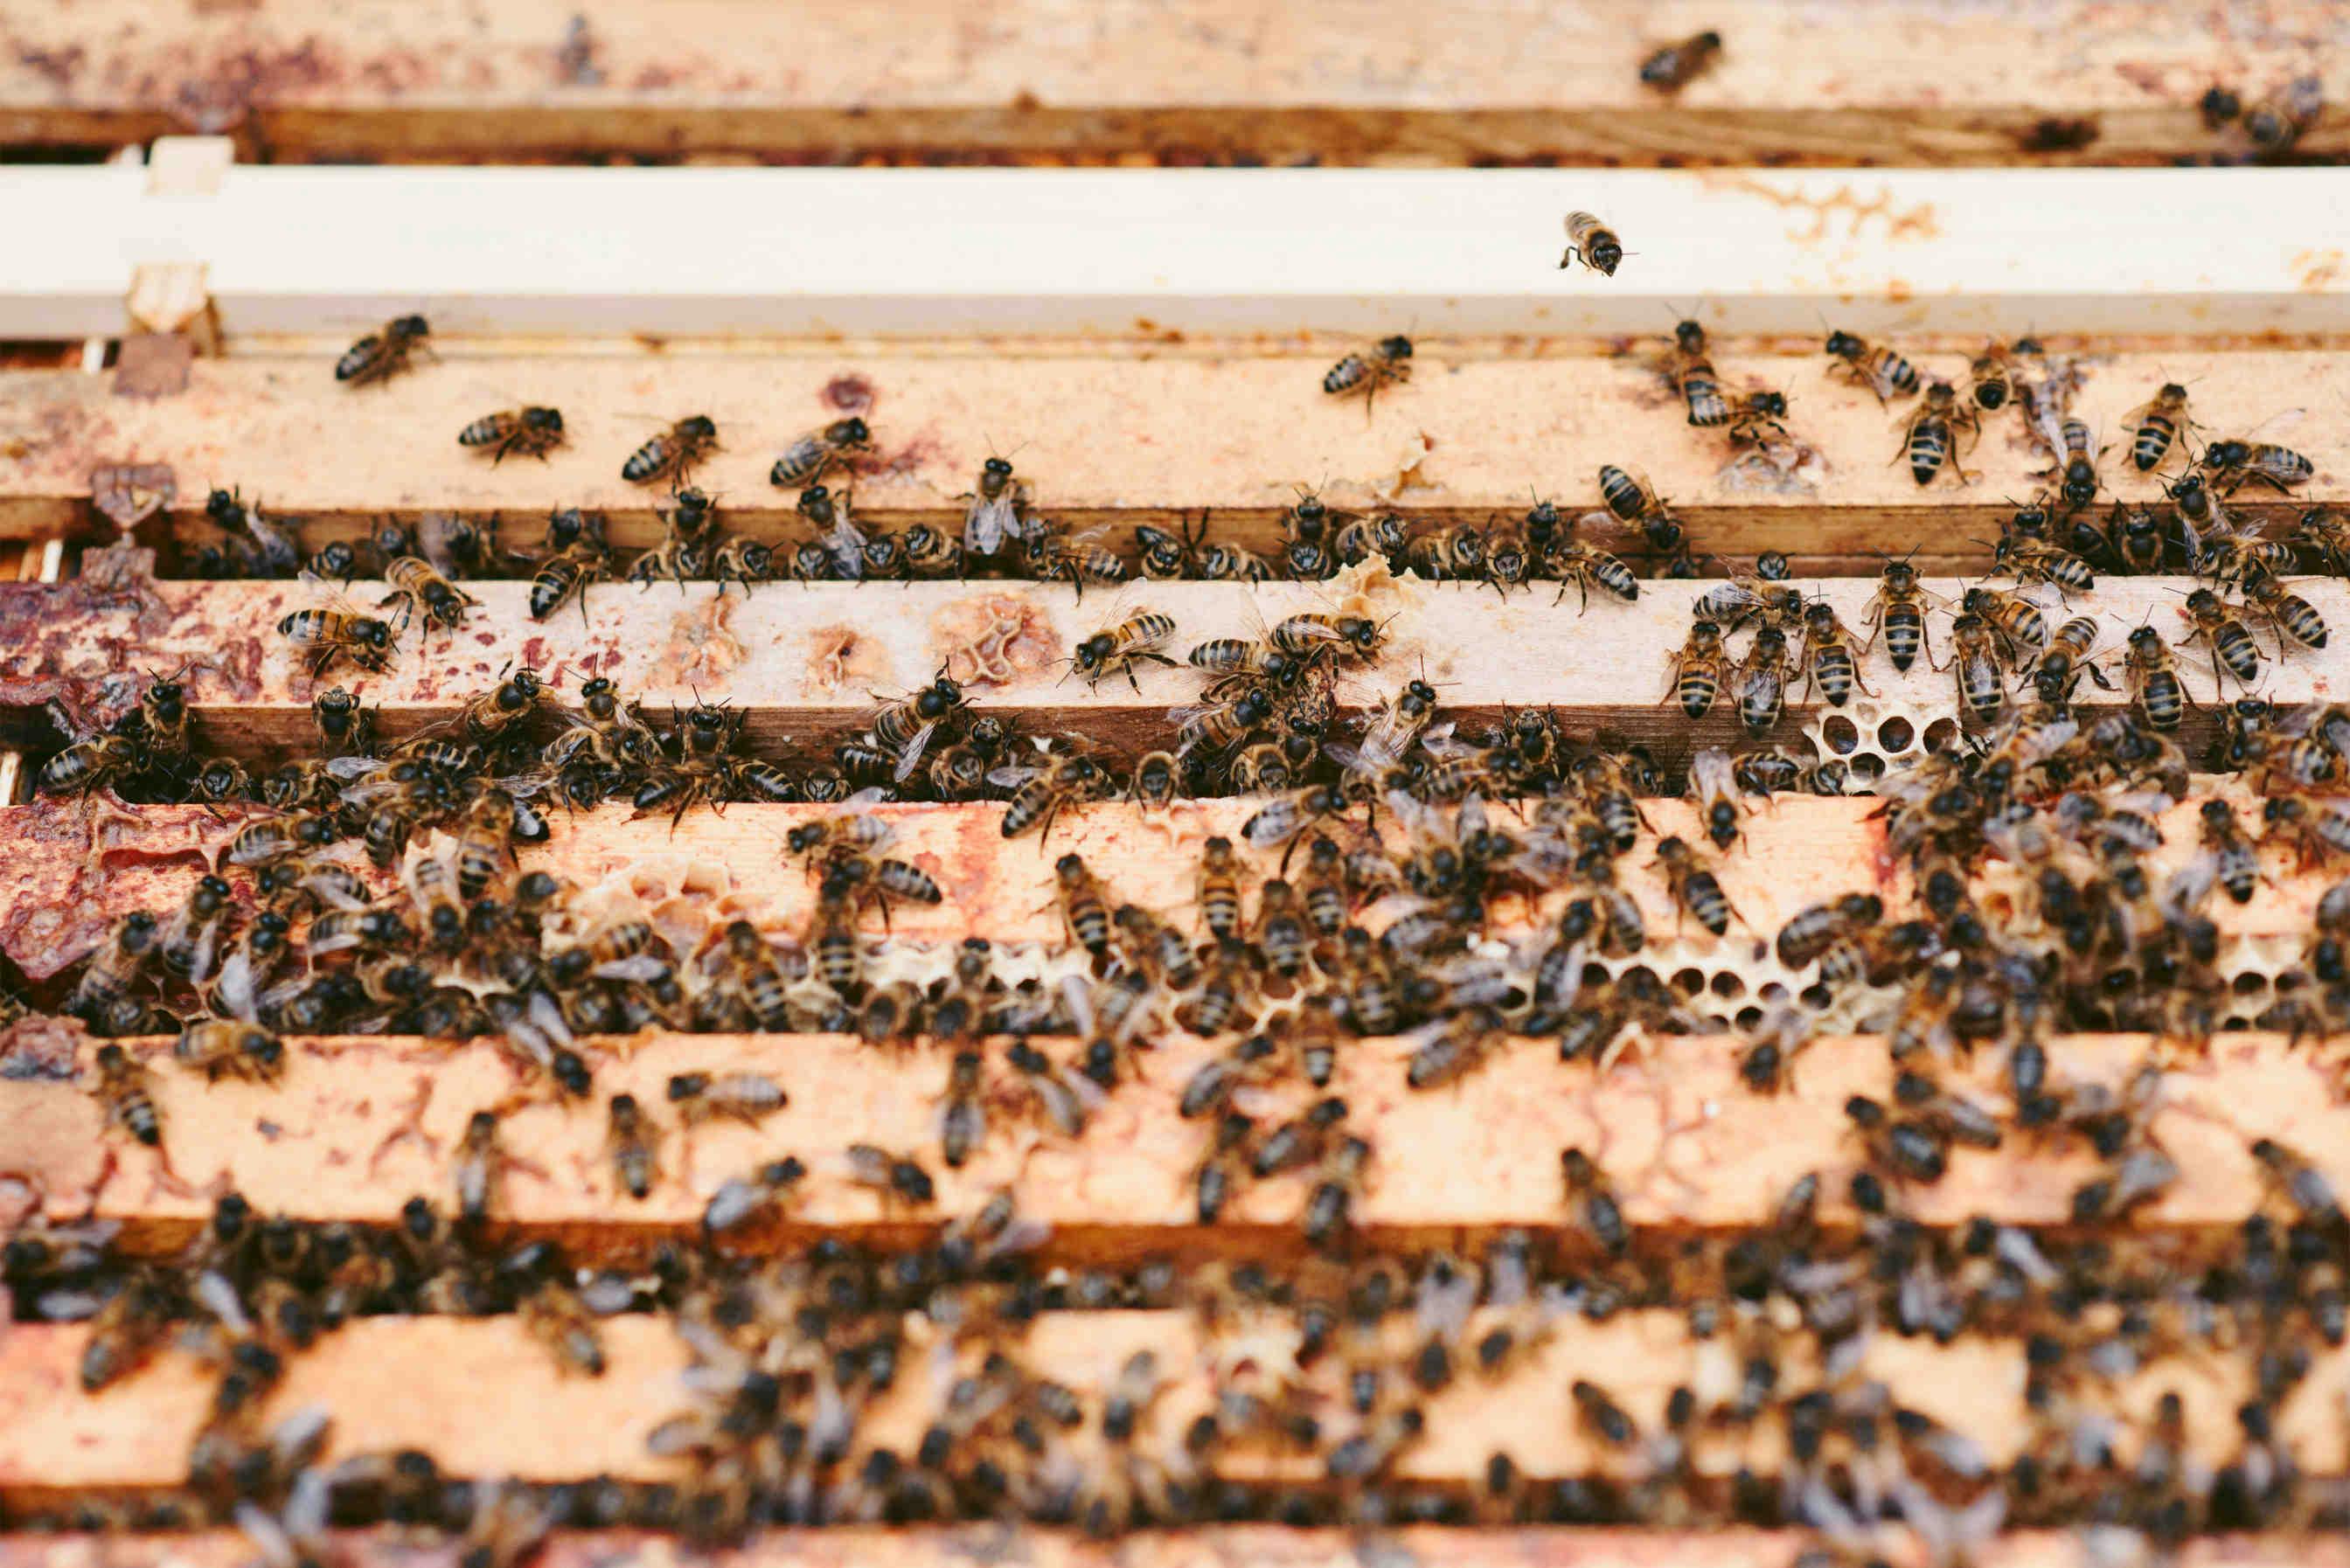 Verringerung der Anzahl der Bienenrämchen